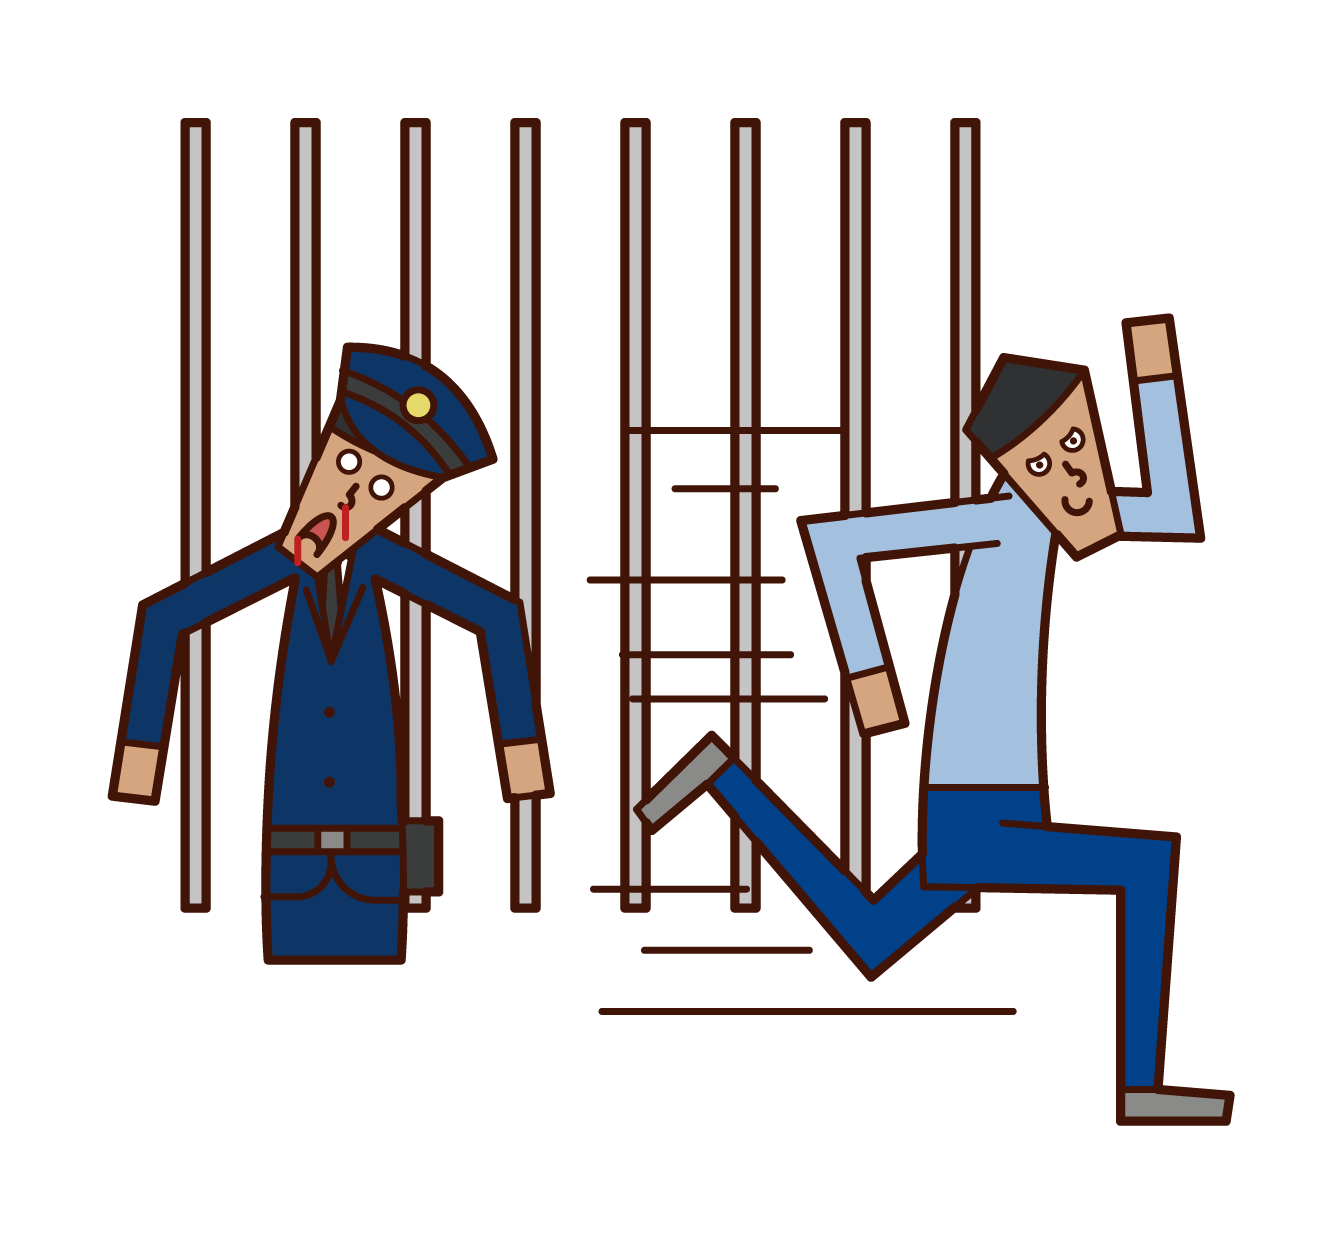 脱獄する犯人 囚人 男性 のイラスト フリーイラスト素材 Kukukeke ククケケ